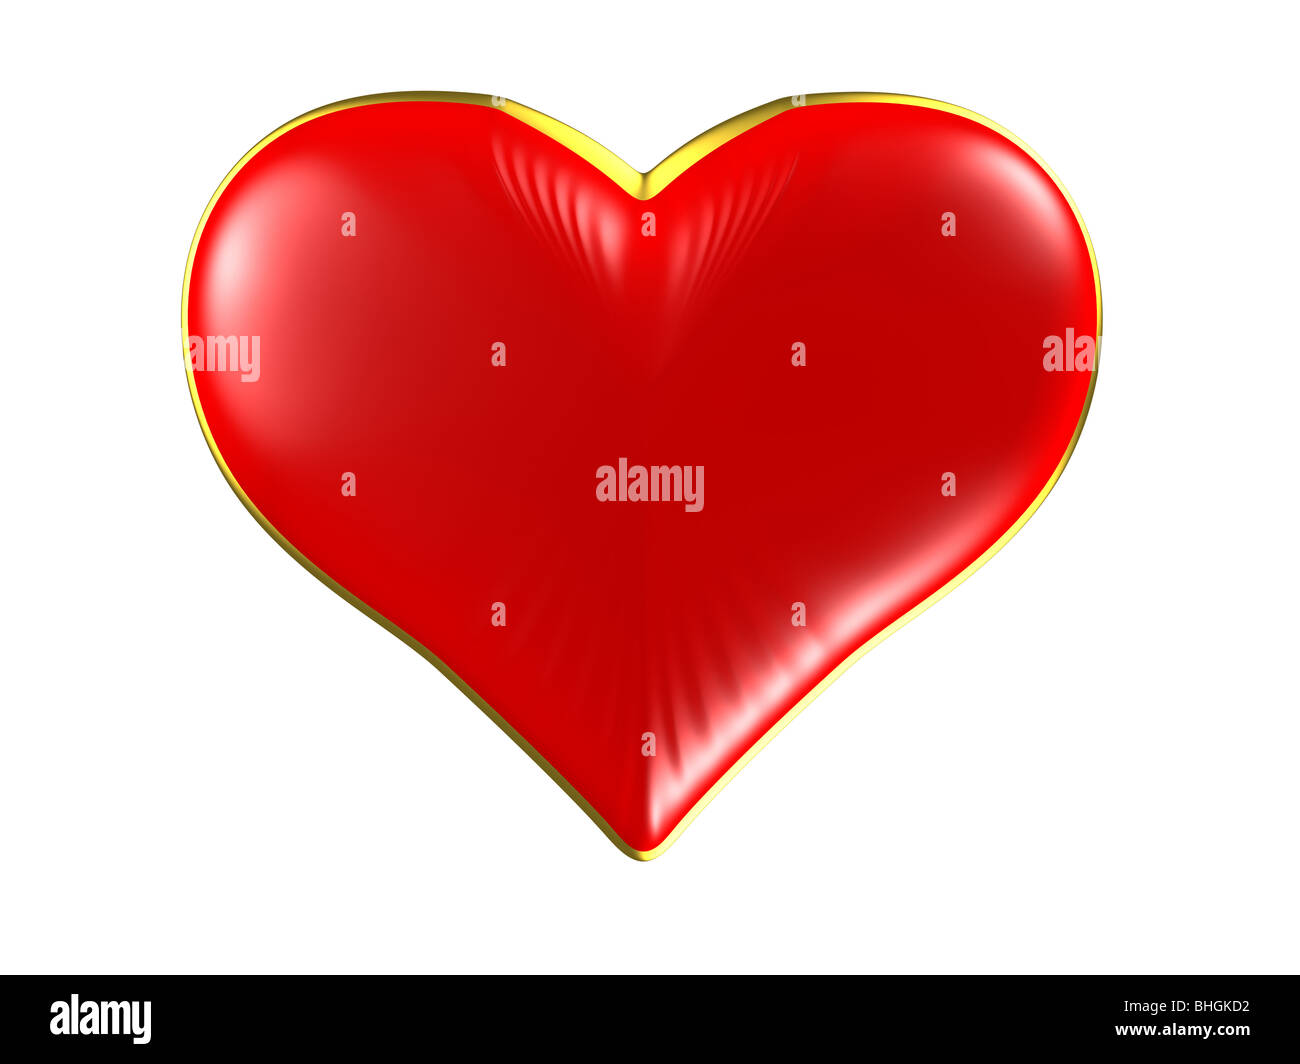 Isolierte rotes Herz mit Goldrand auf weißem Hintergrund. Bitte sehen Sie einige ähnliche Bilder aus meinem portfolio Stockfoto